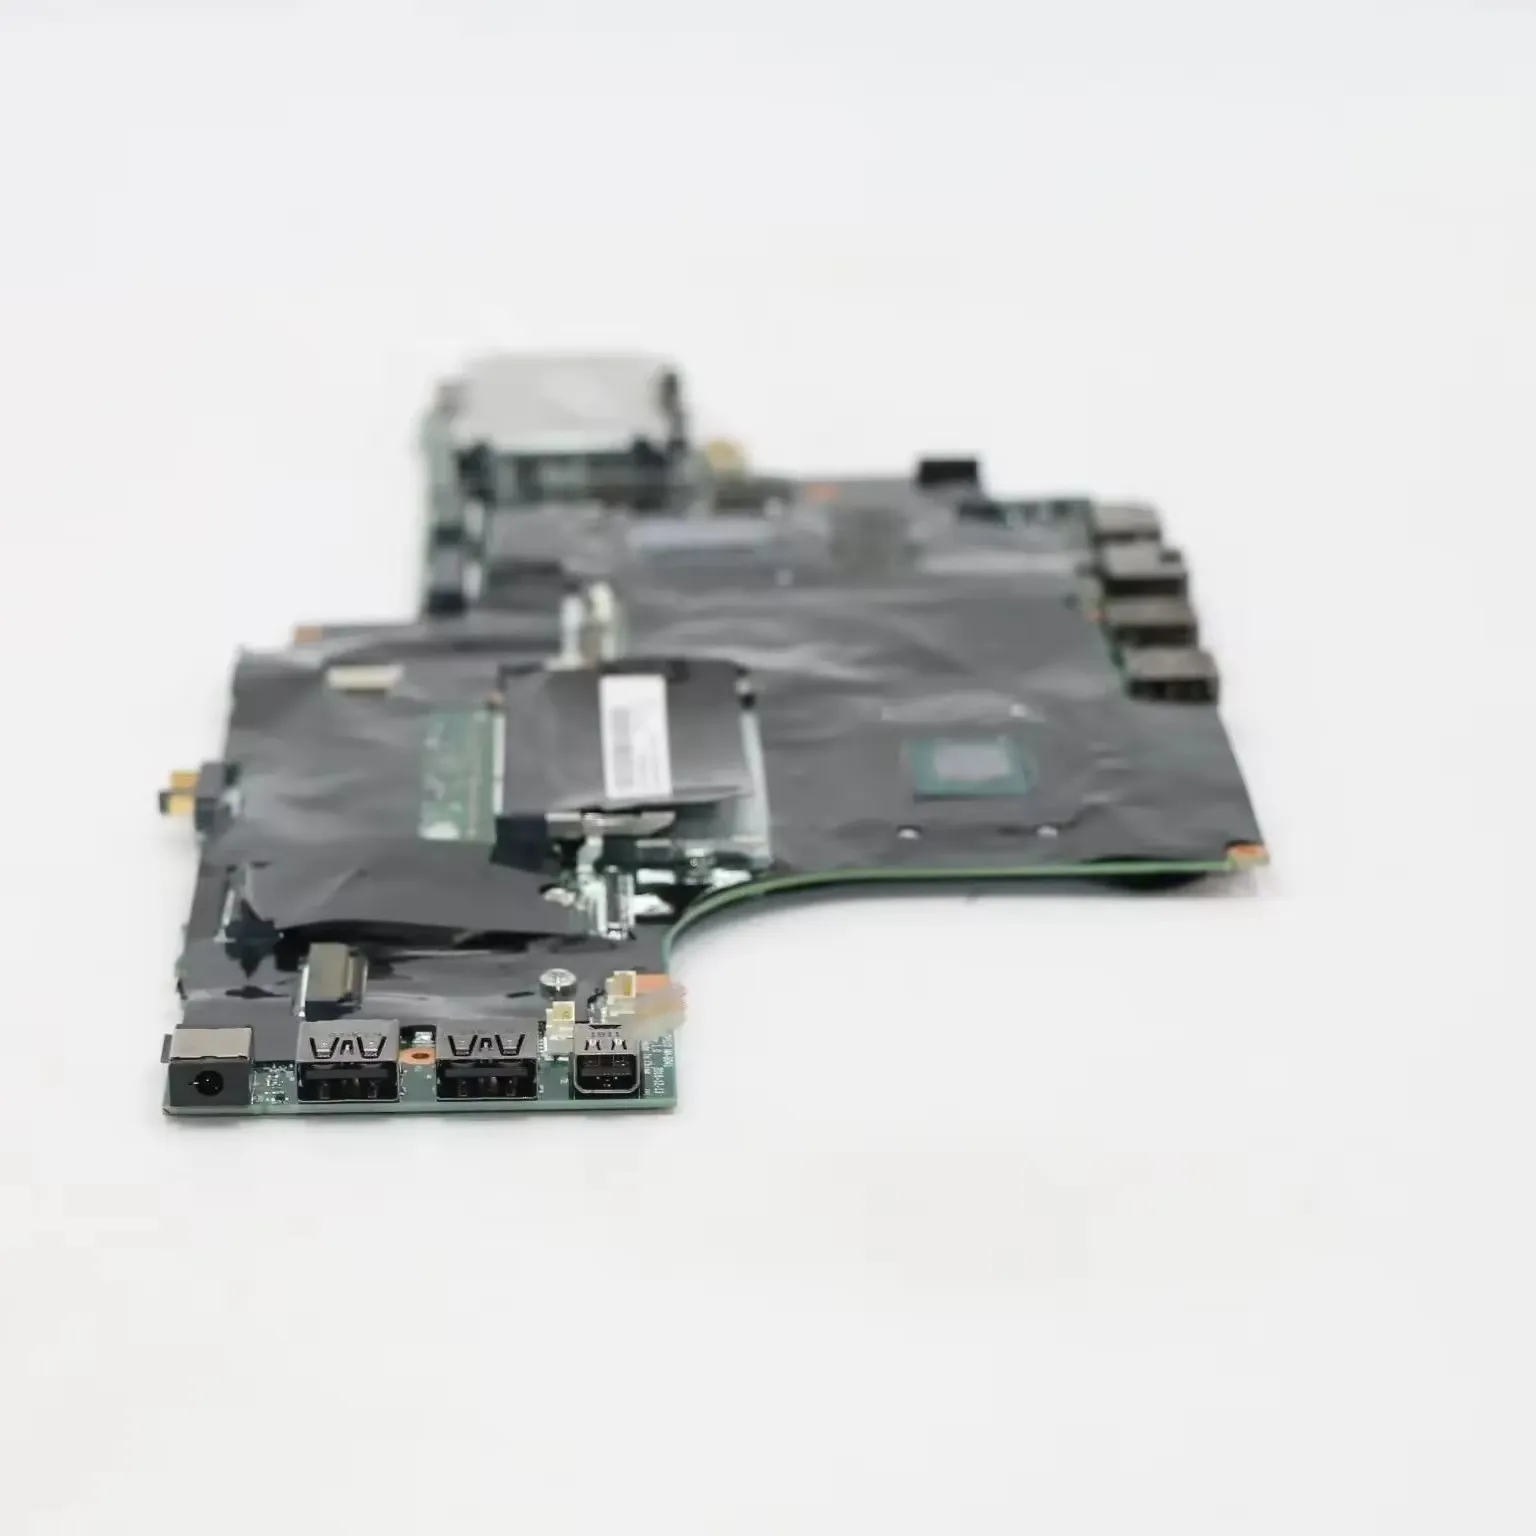 SN NM-B401 FRU PN 01AV364 01AV363 CPU i76820 I77820HQ GPU M2200M V4G modèle Multiple en option P51 ordinateur portable ThinkPad carte mère